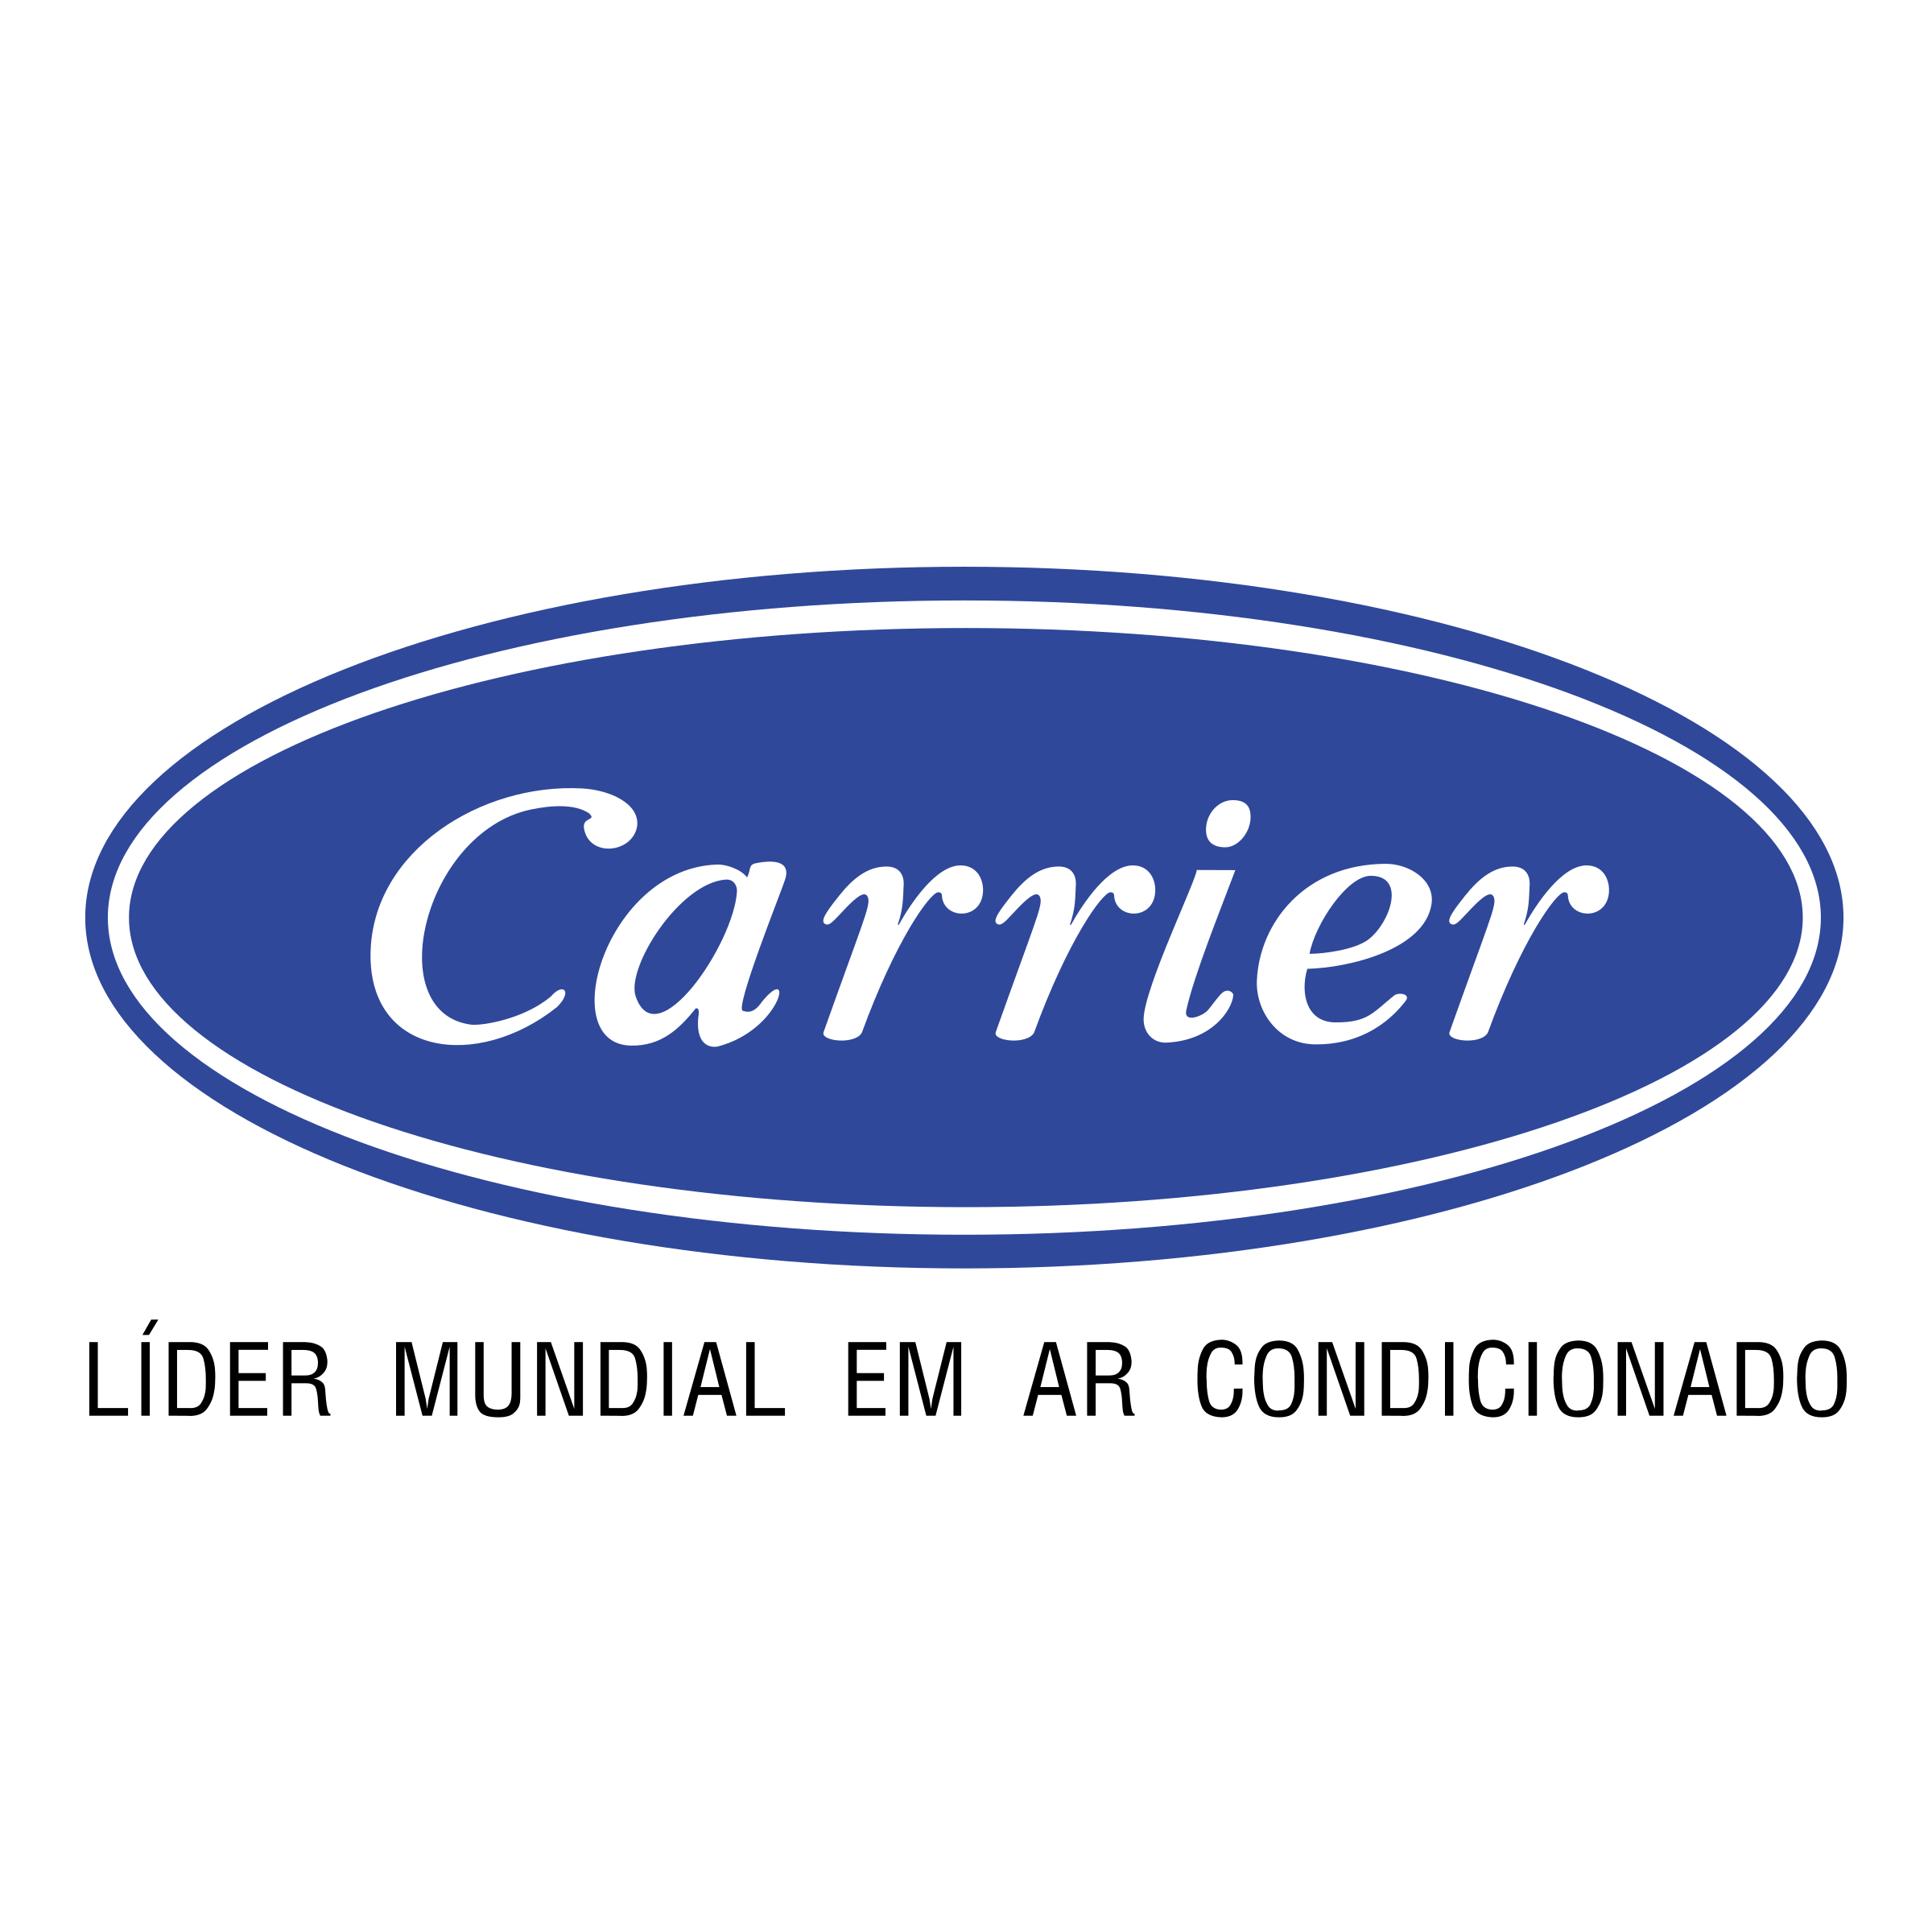 Carrier Logo - Carrier Logo PNG Transparent & SVG Vector - Freebie Supply